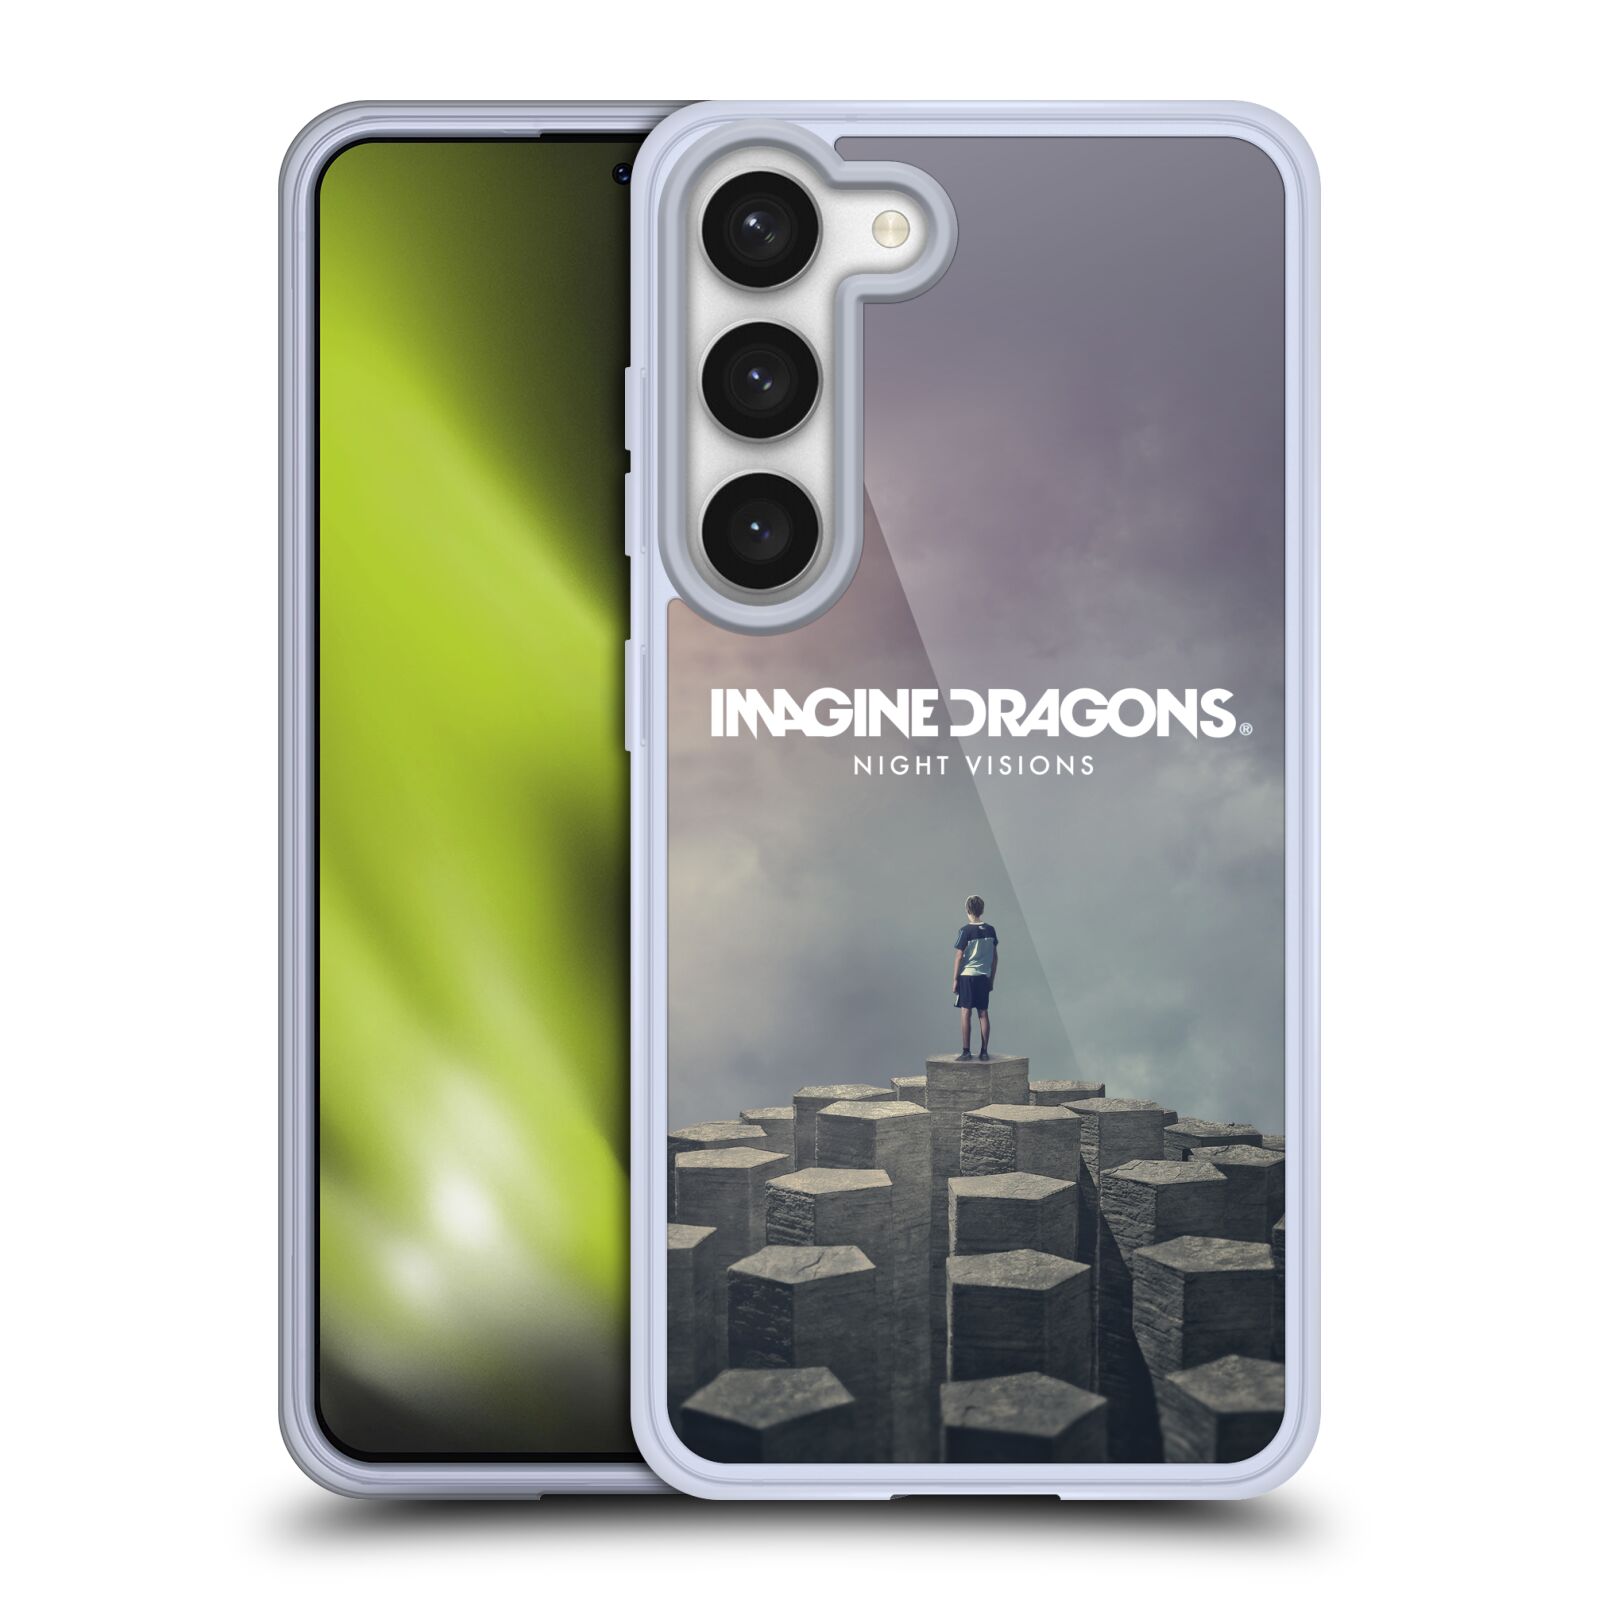 Silikonové pouzdro na mobil Samsung Galaxy S23 - Imagine Dragons - Night Visions (Silikonový kryt, obal, pouzdro na mobilní telefon Samsung Galaxy S23 s licencovaným motivem Imagine Dragons - Night Visions)